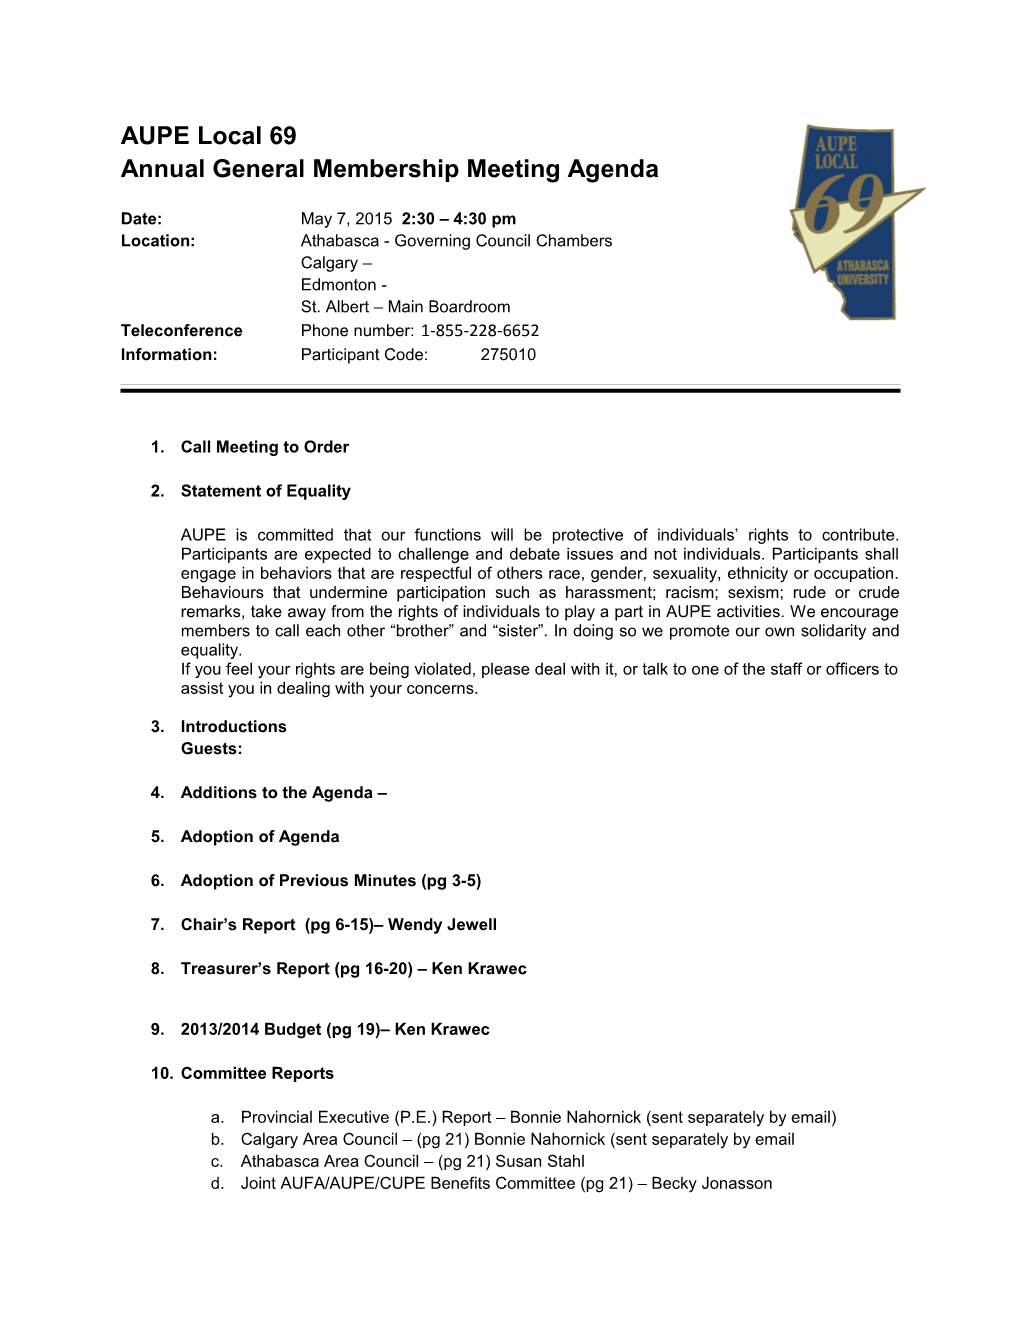 Annual General Membership Meeting Agenda